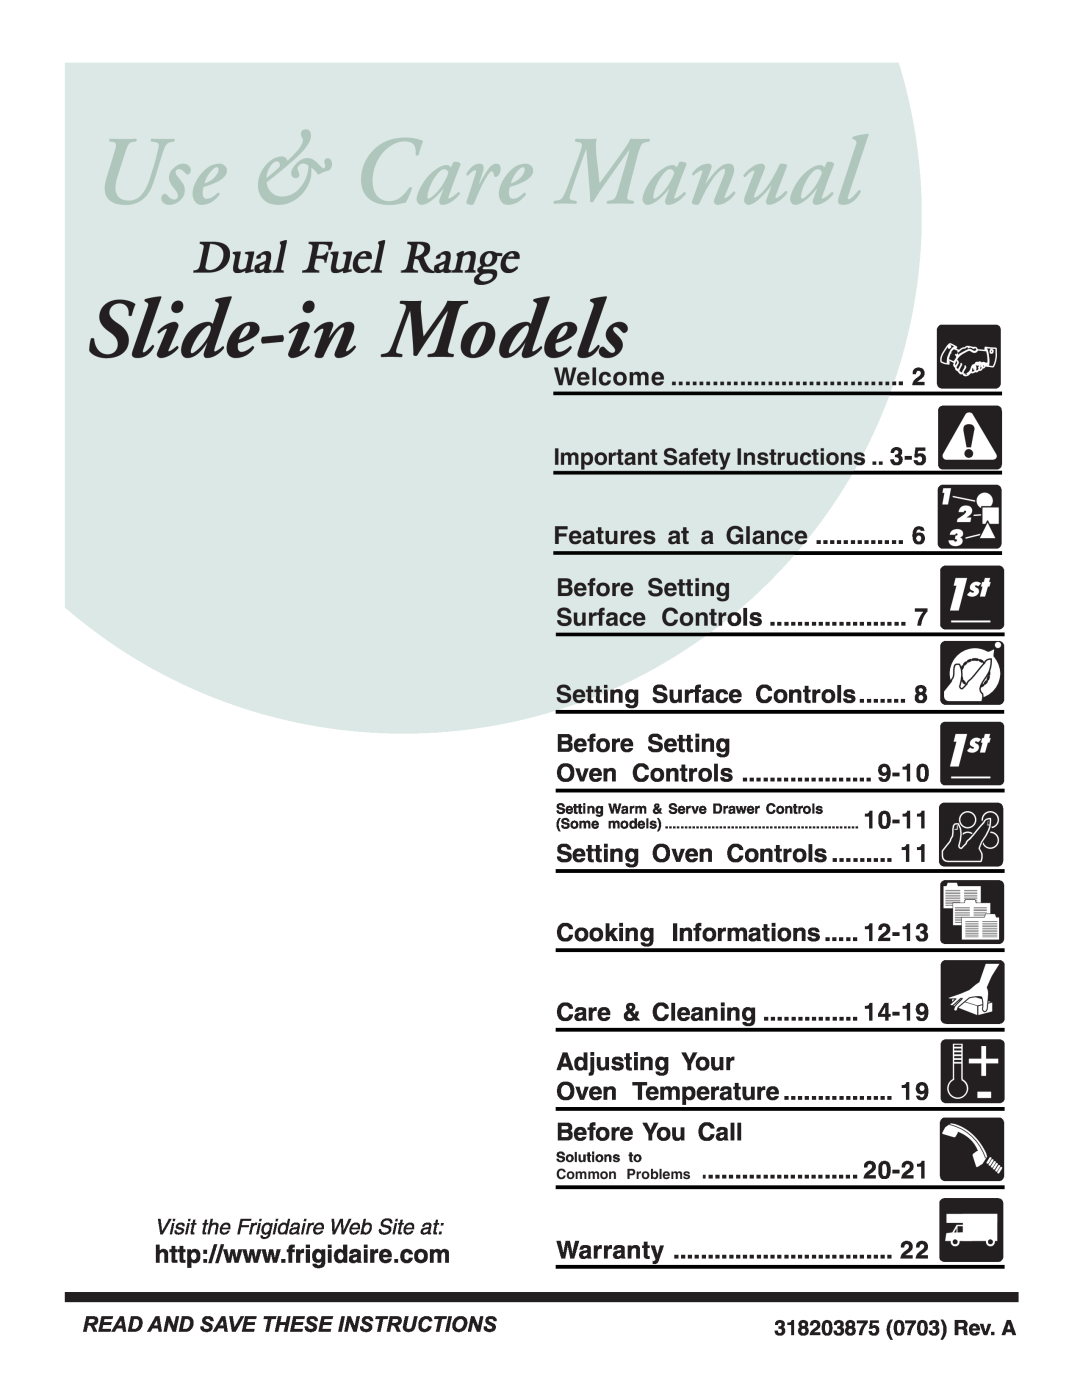 Frigidaire 318203875 warranty Slide-in Models, Dual Fuel Range 